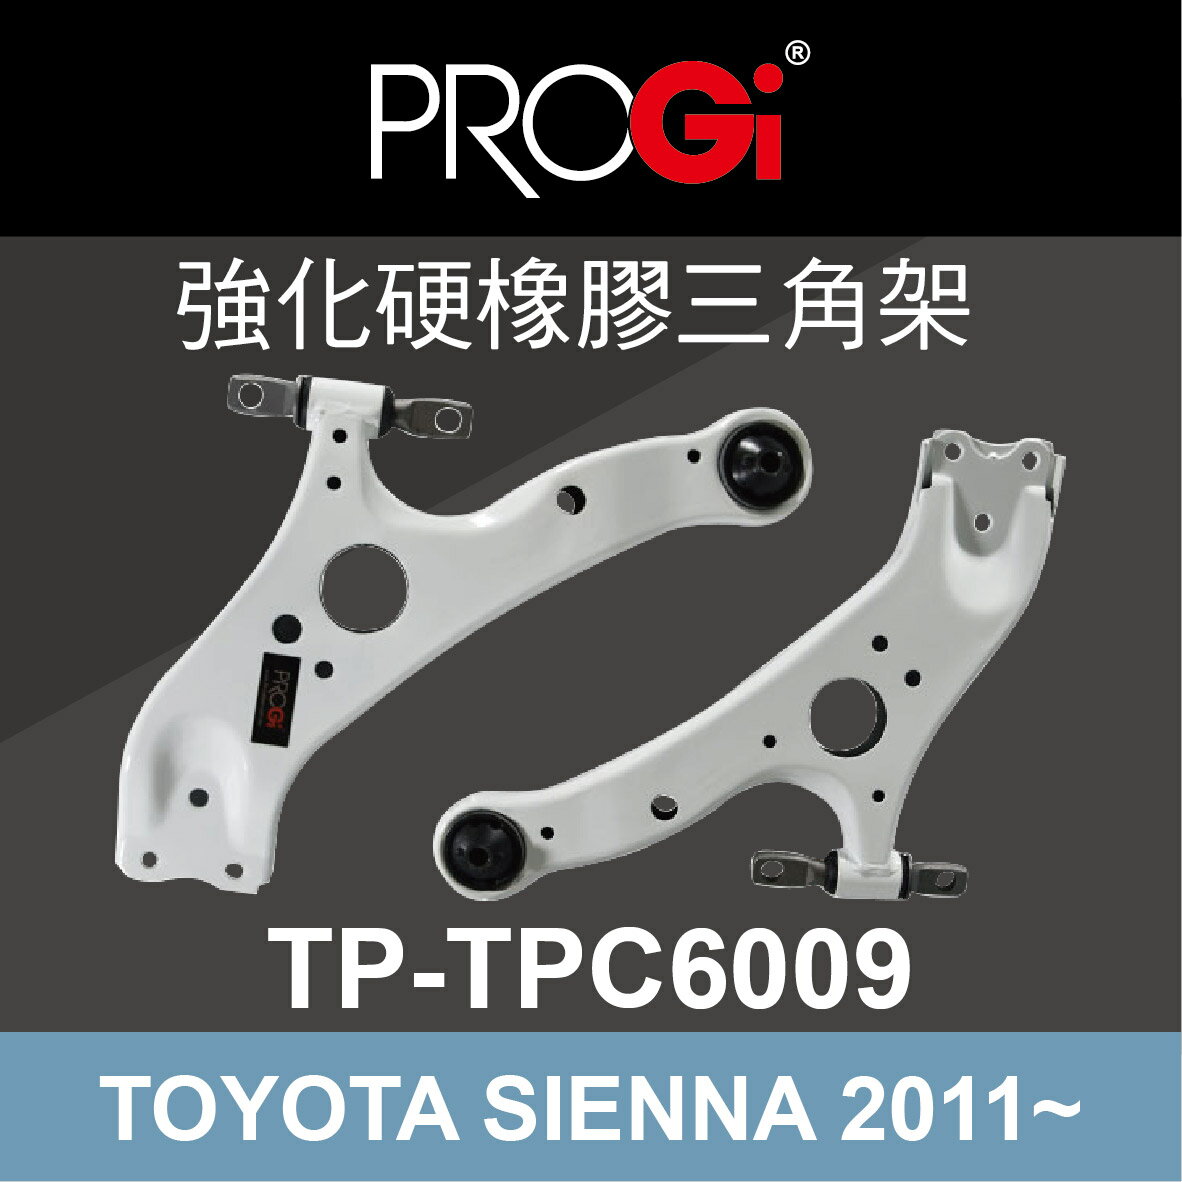 真便宜 [預購]PROGi TP-TPC6009 強化硬橡膠三角架(TOYOTA SIENNA 2011~)